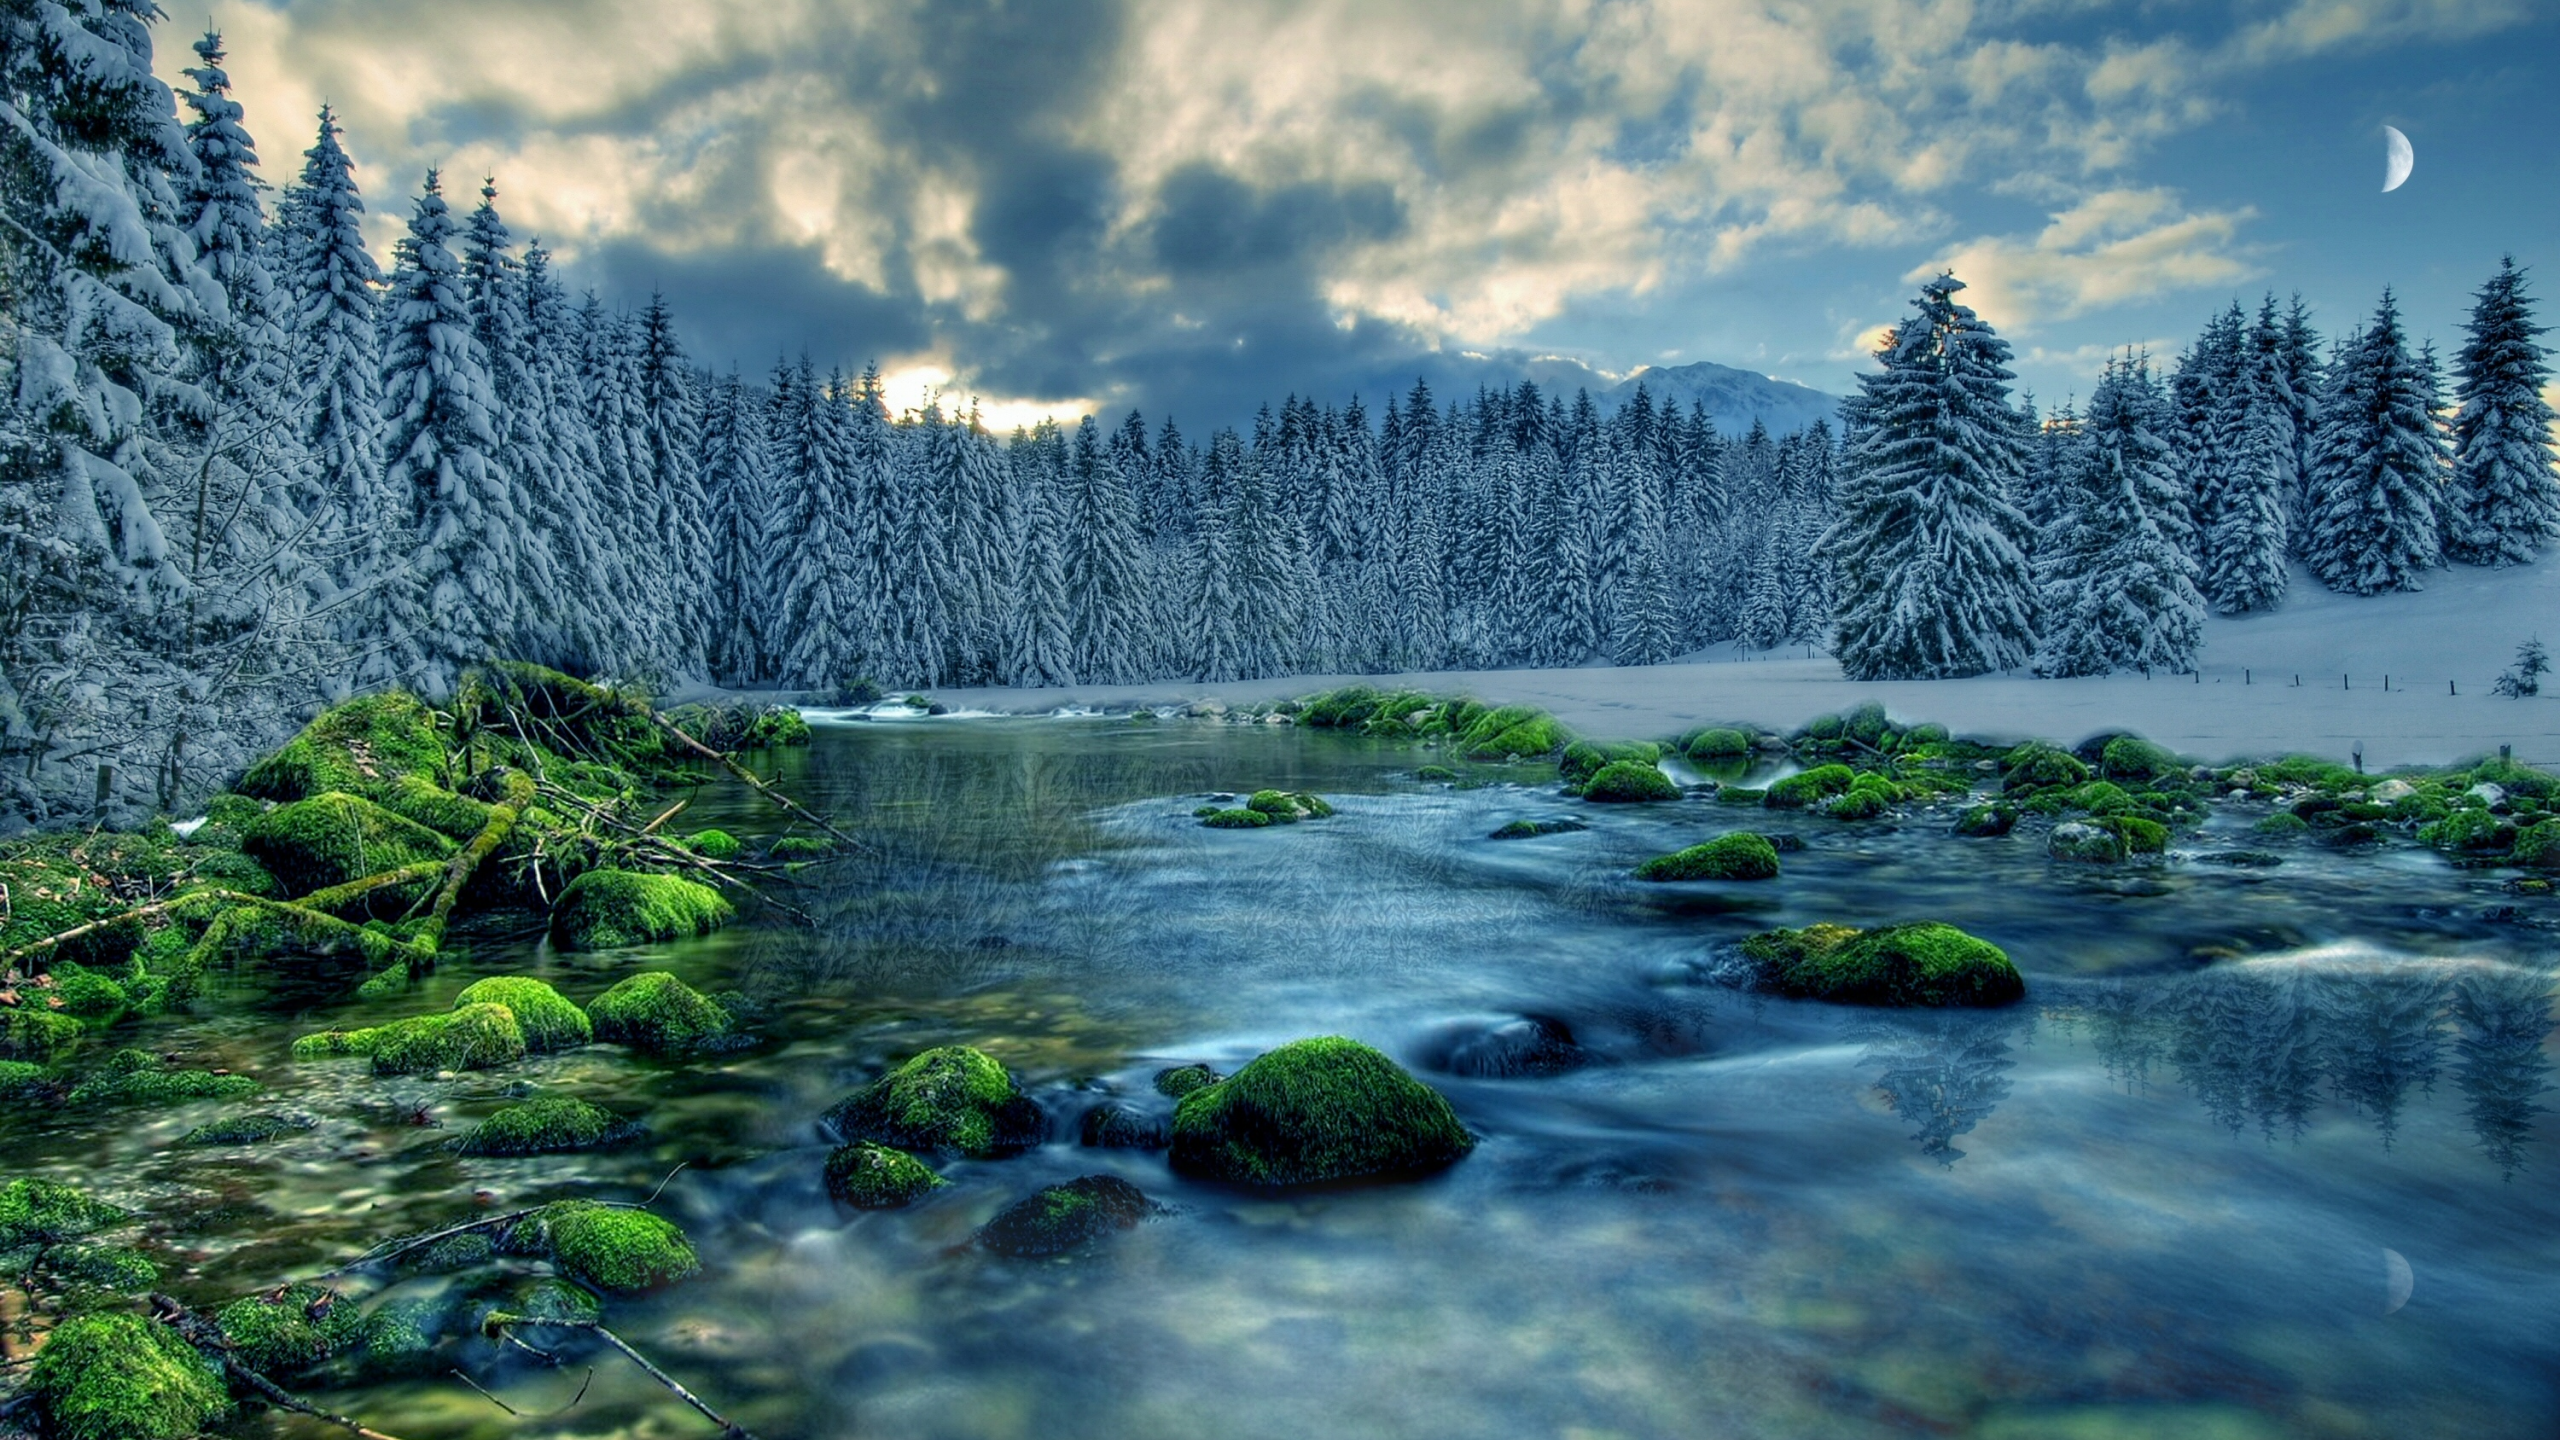 снег, мох, деревья, облака, камни, небо, поток, лес, река